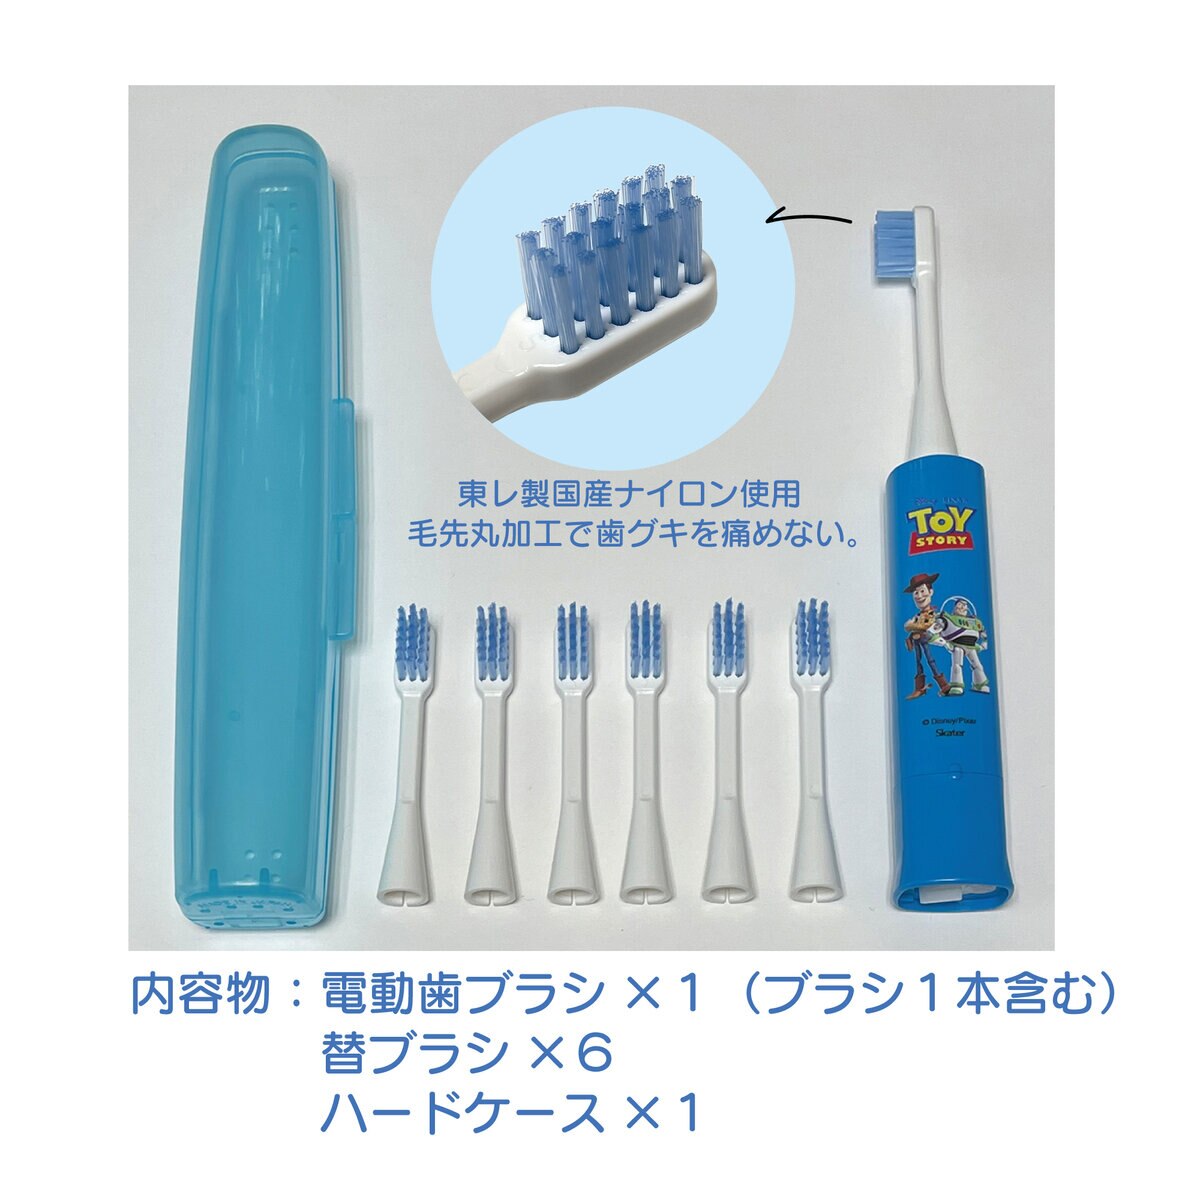 935円 86％以上節約 ミニマム 電動付歯ブラシ こどもハピカ ブルー 毛の硬さ:やわらかめ DBK-1B BP メール便送料無料 × 6個セット